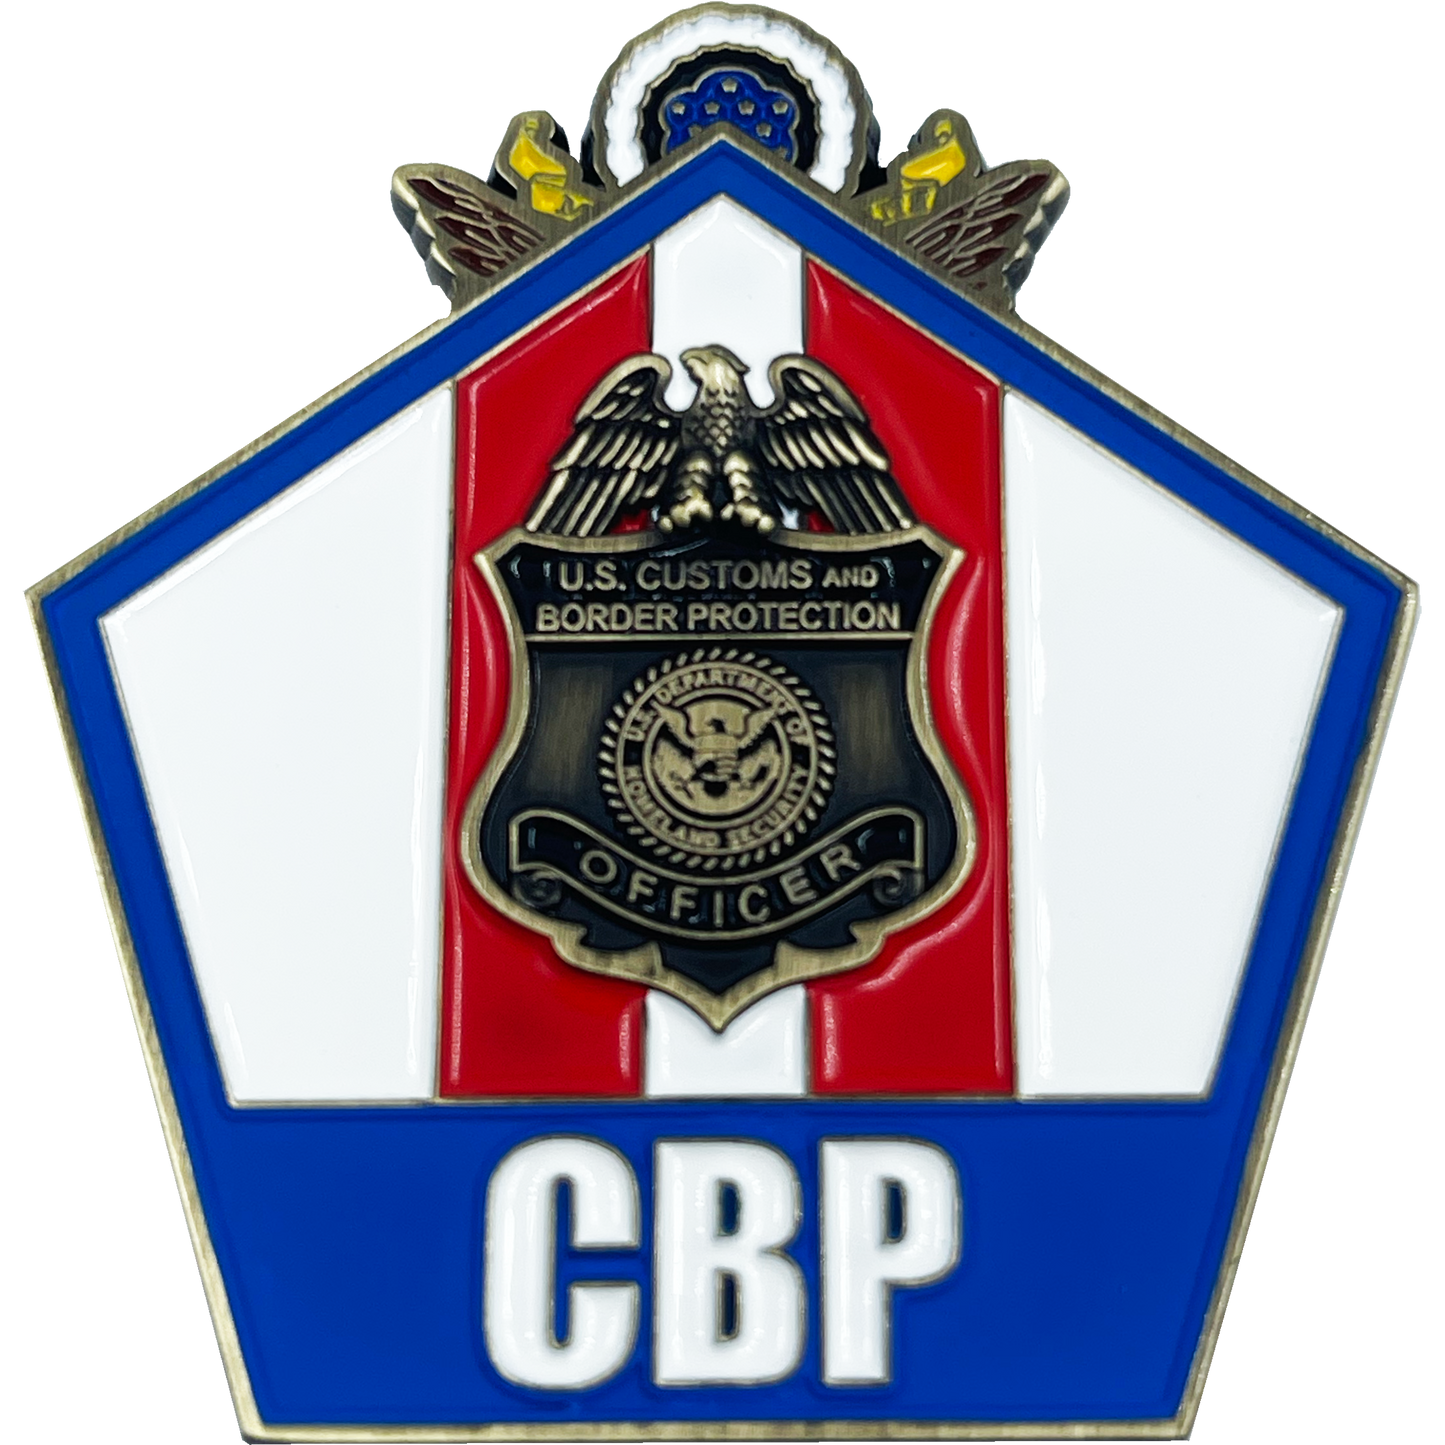 BL15-018 CBP Officer A-TCET Anti Terrorism Contraband Enforcement Team Airport Seaport